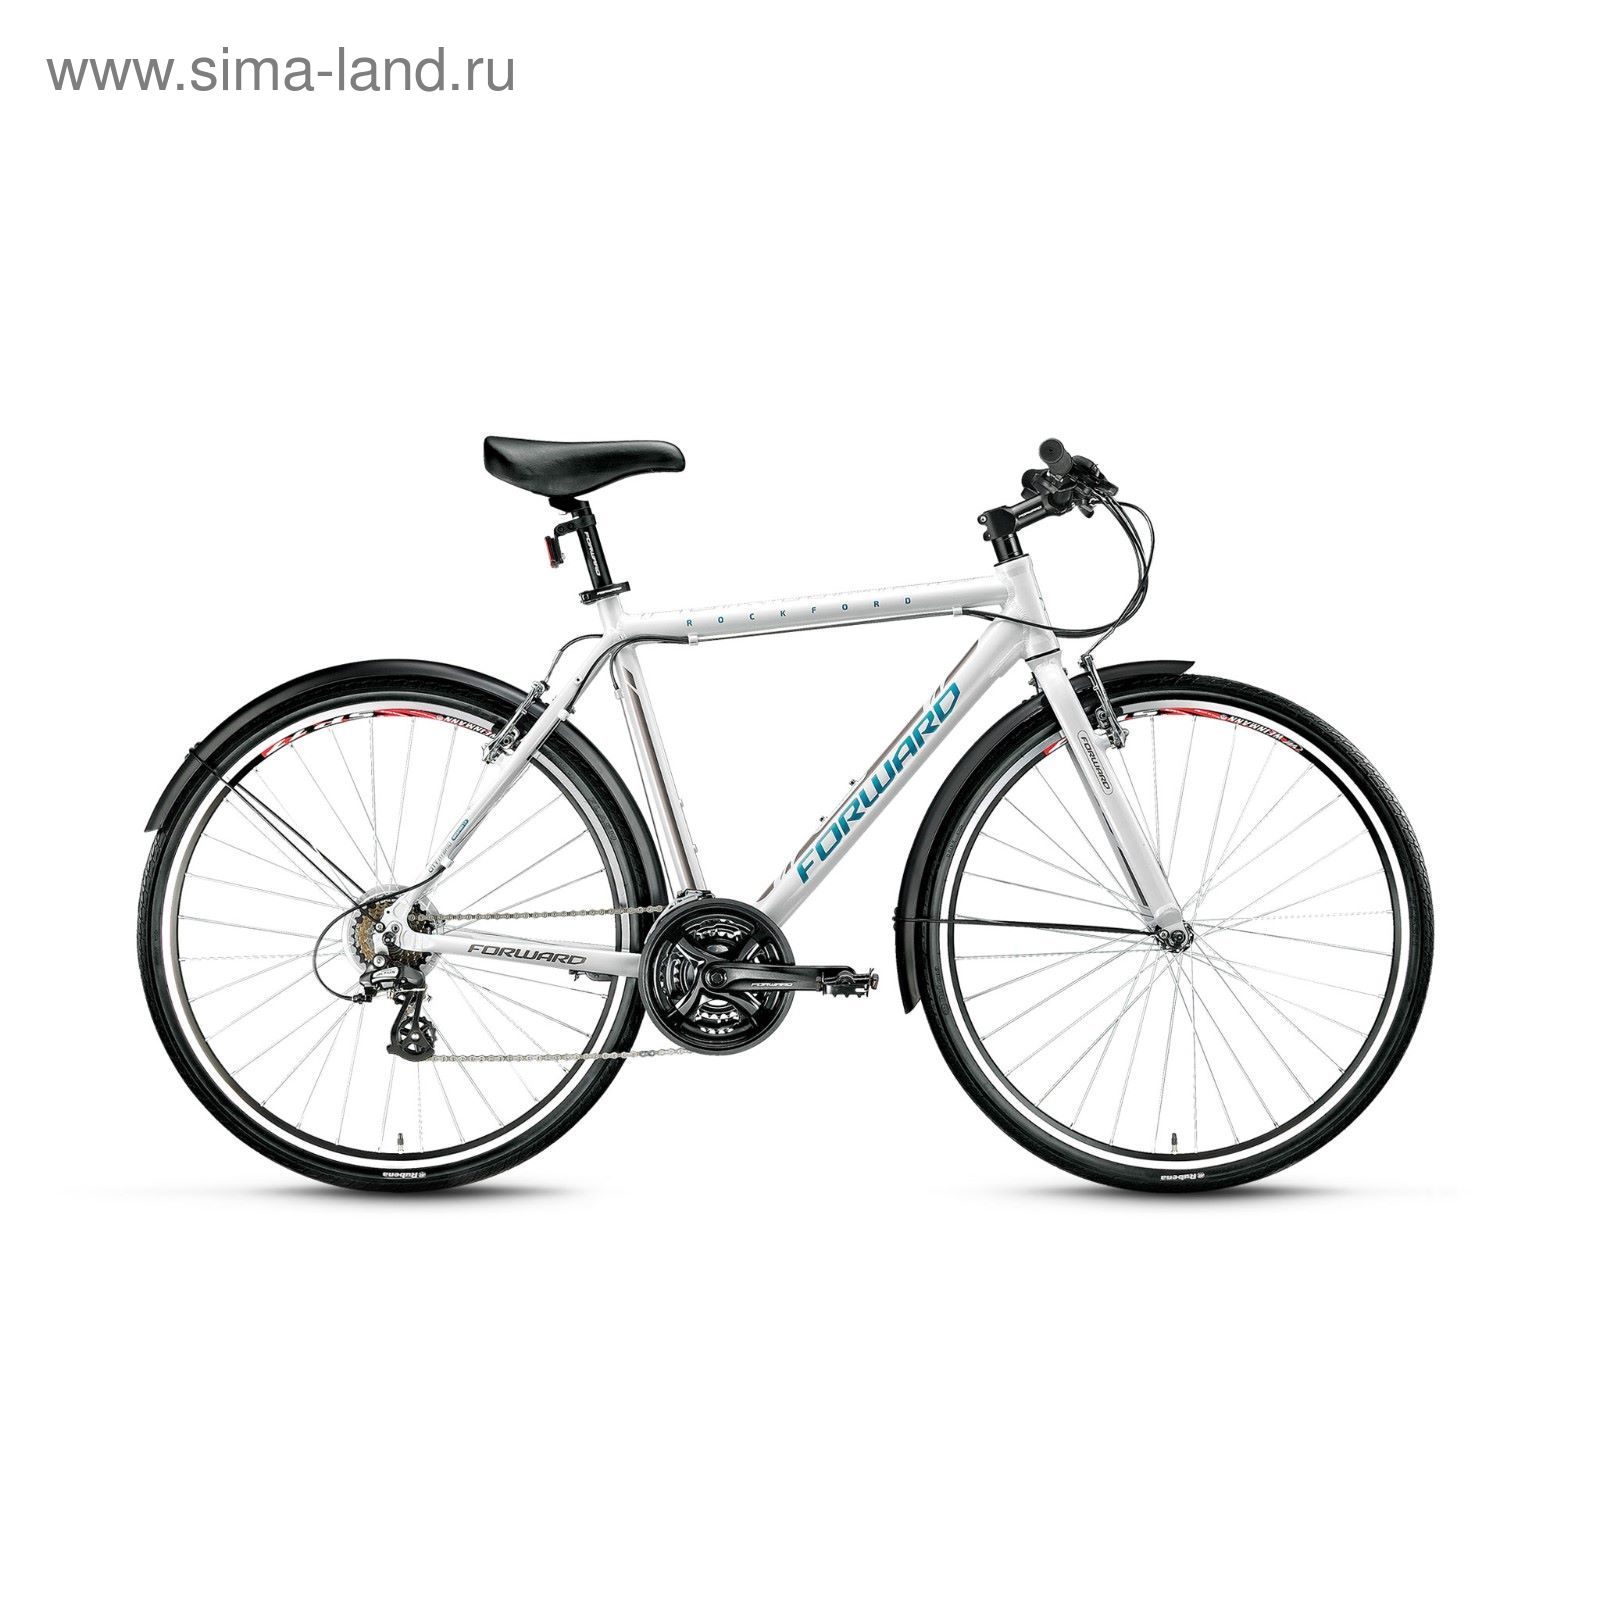 Велосипед 28" Forward Rockford 1.0, 2017, цвет белый, размер рамы 500 мм